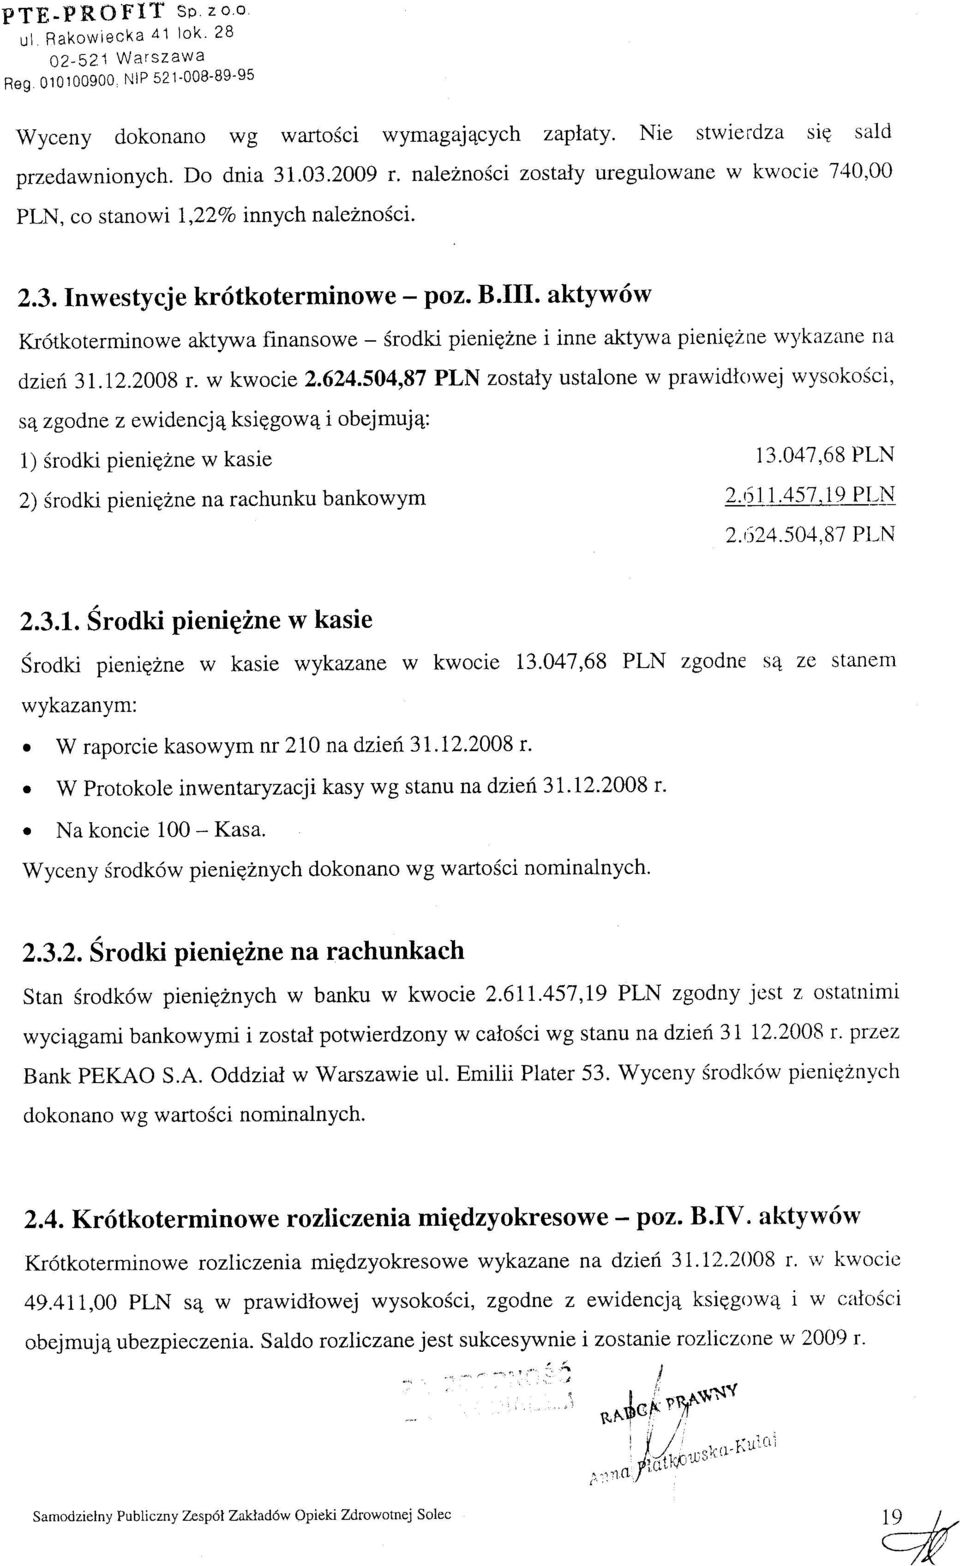 aktyw6w Kr6tkoterminowe aktylva finansowe - Srodki pienigzne i inne aktyr,va pienigzne w)rkazane ria dzief.3i.12.2008 r. w kwocie 2.624.